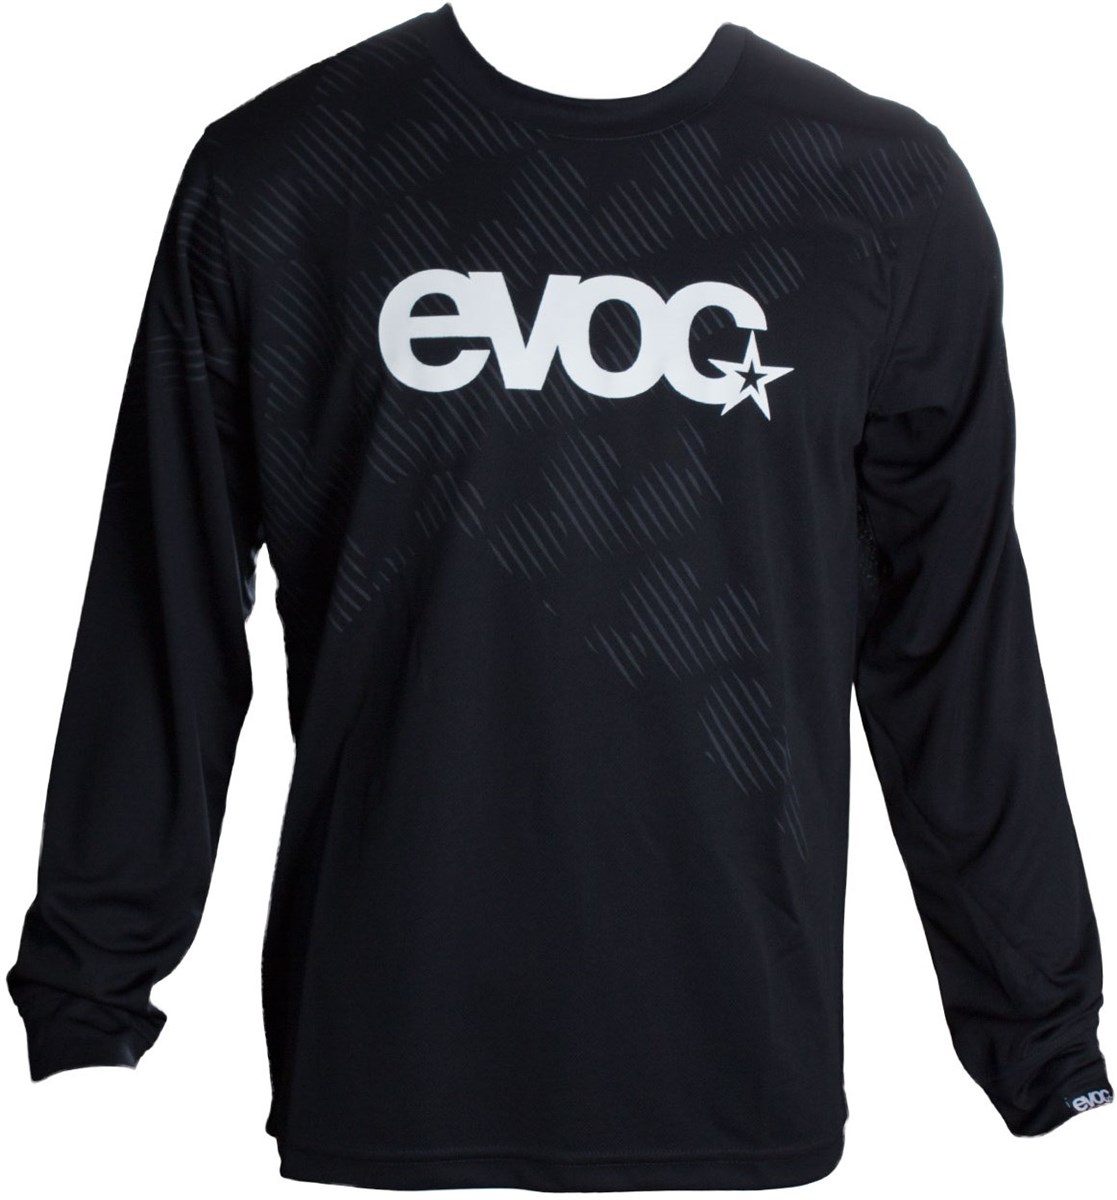 Evoc Logo Long Sleeve Jersey product image